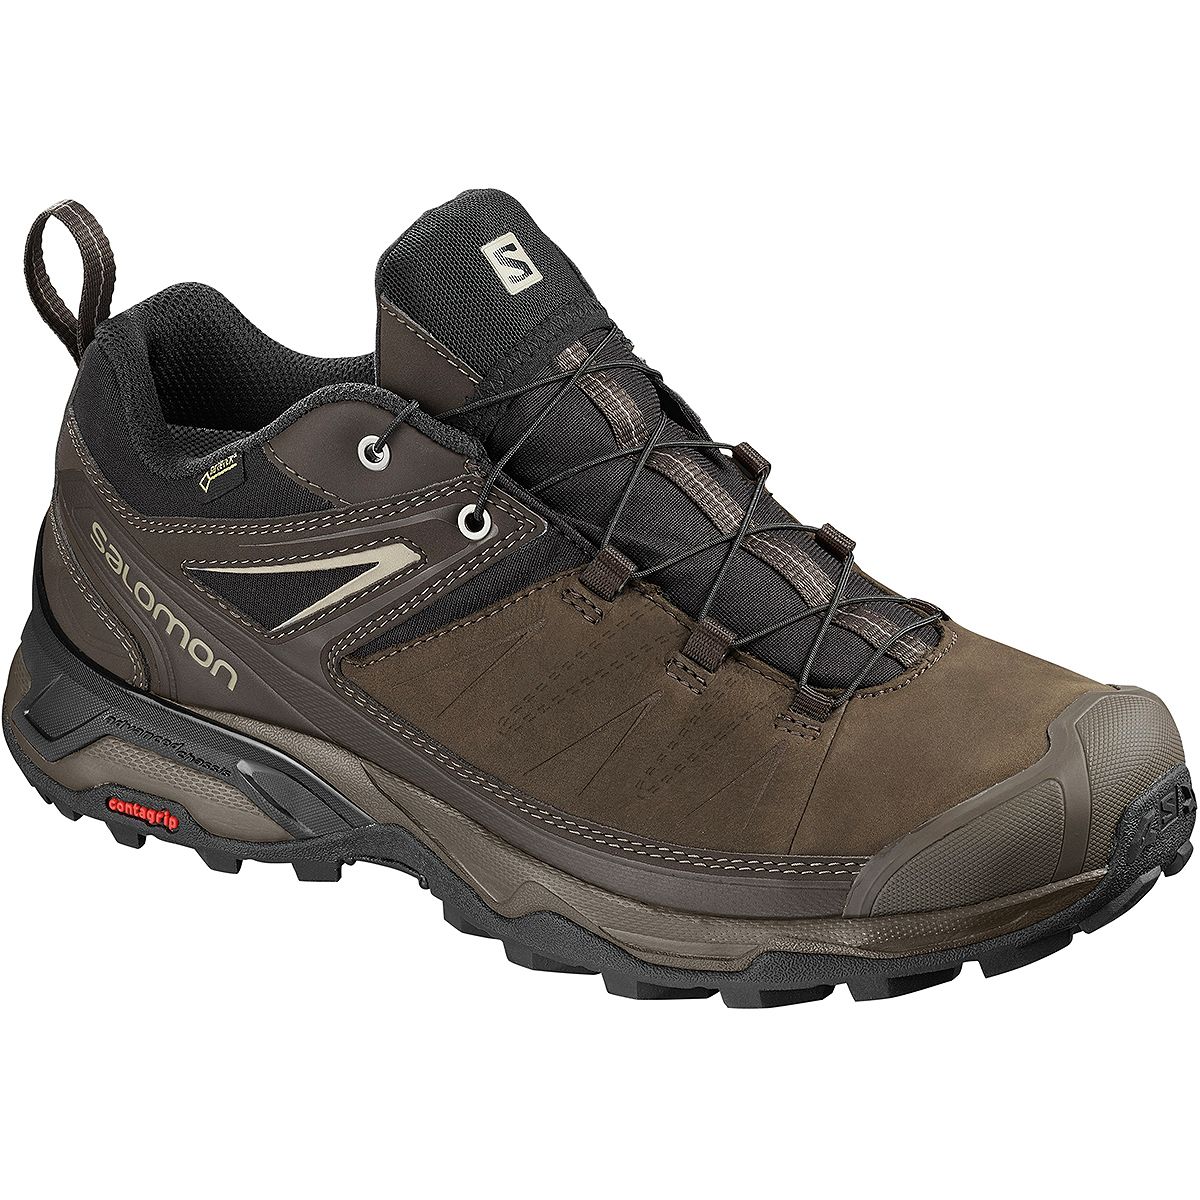 Salomon X 3 LTR GTX Hiking Shoe - Men's - Footwear